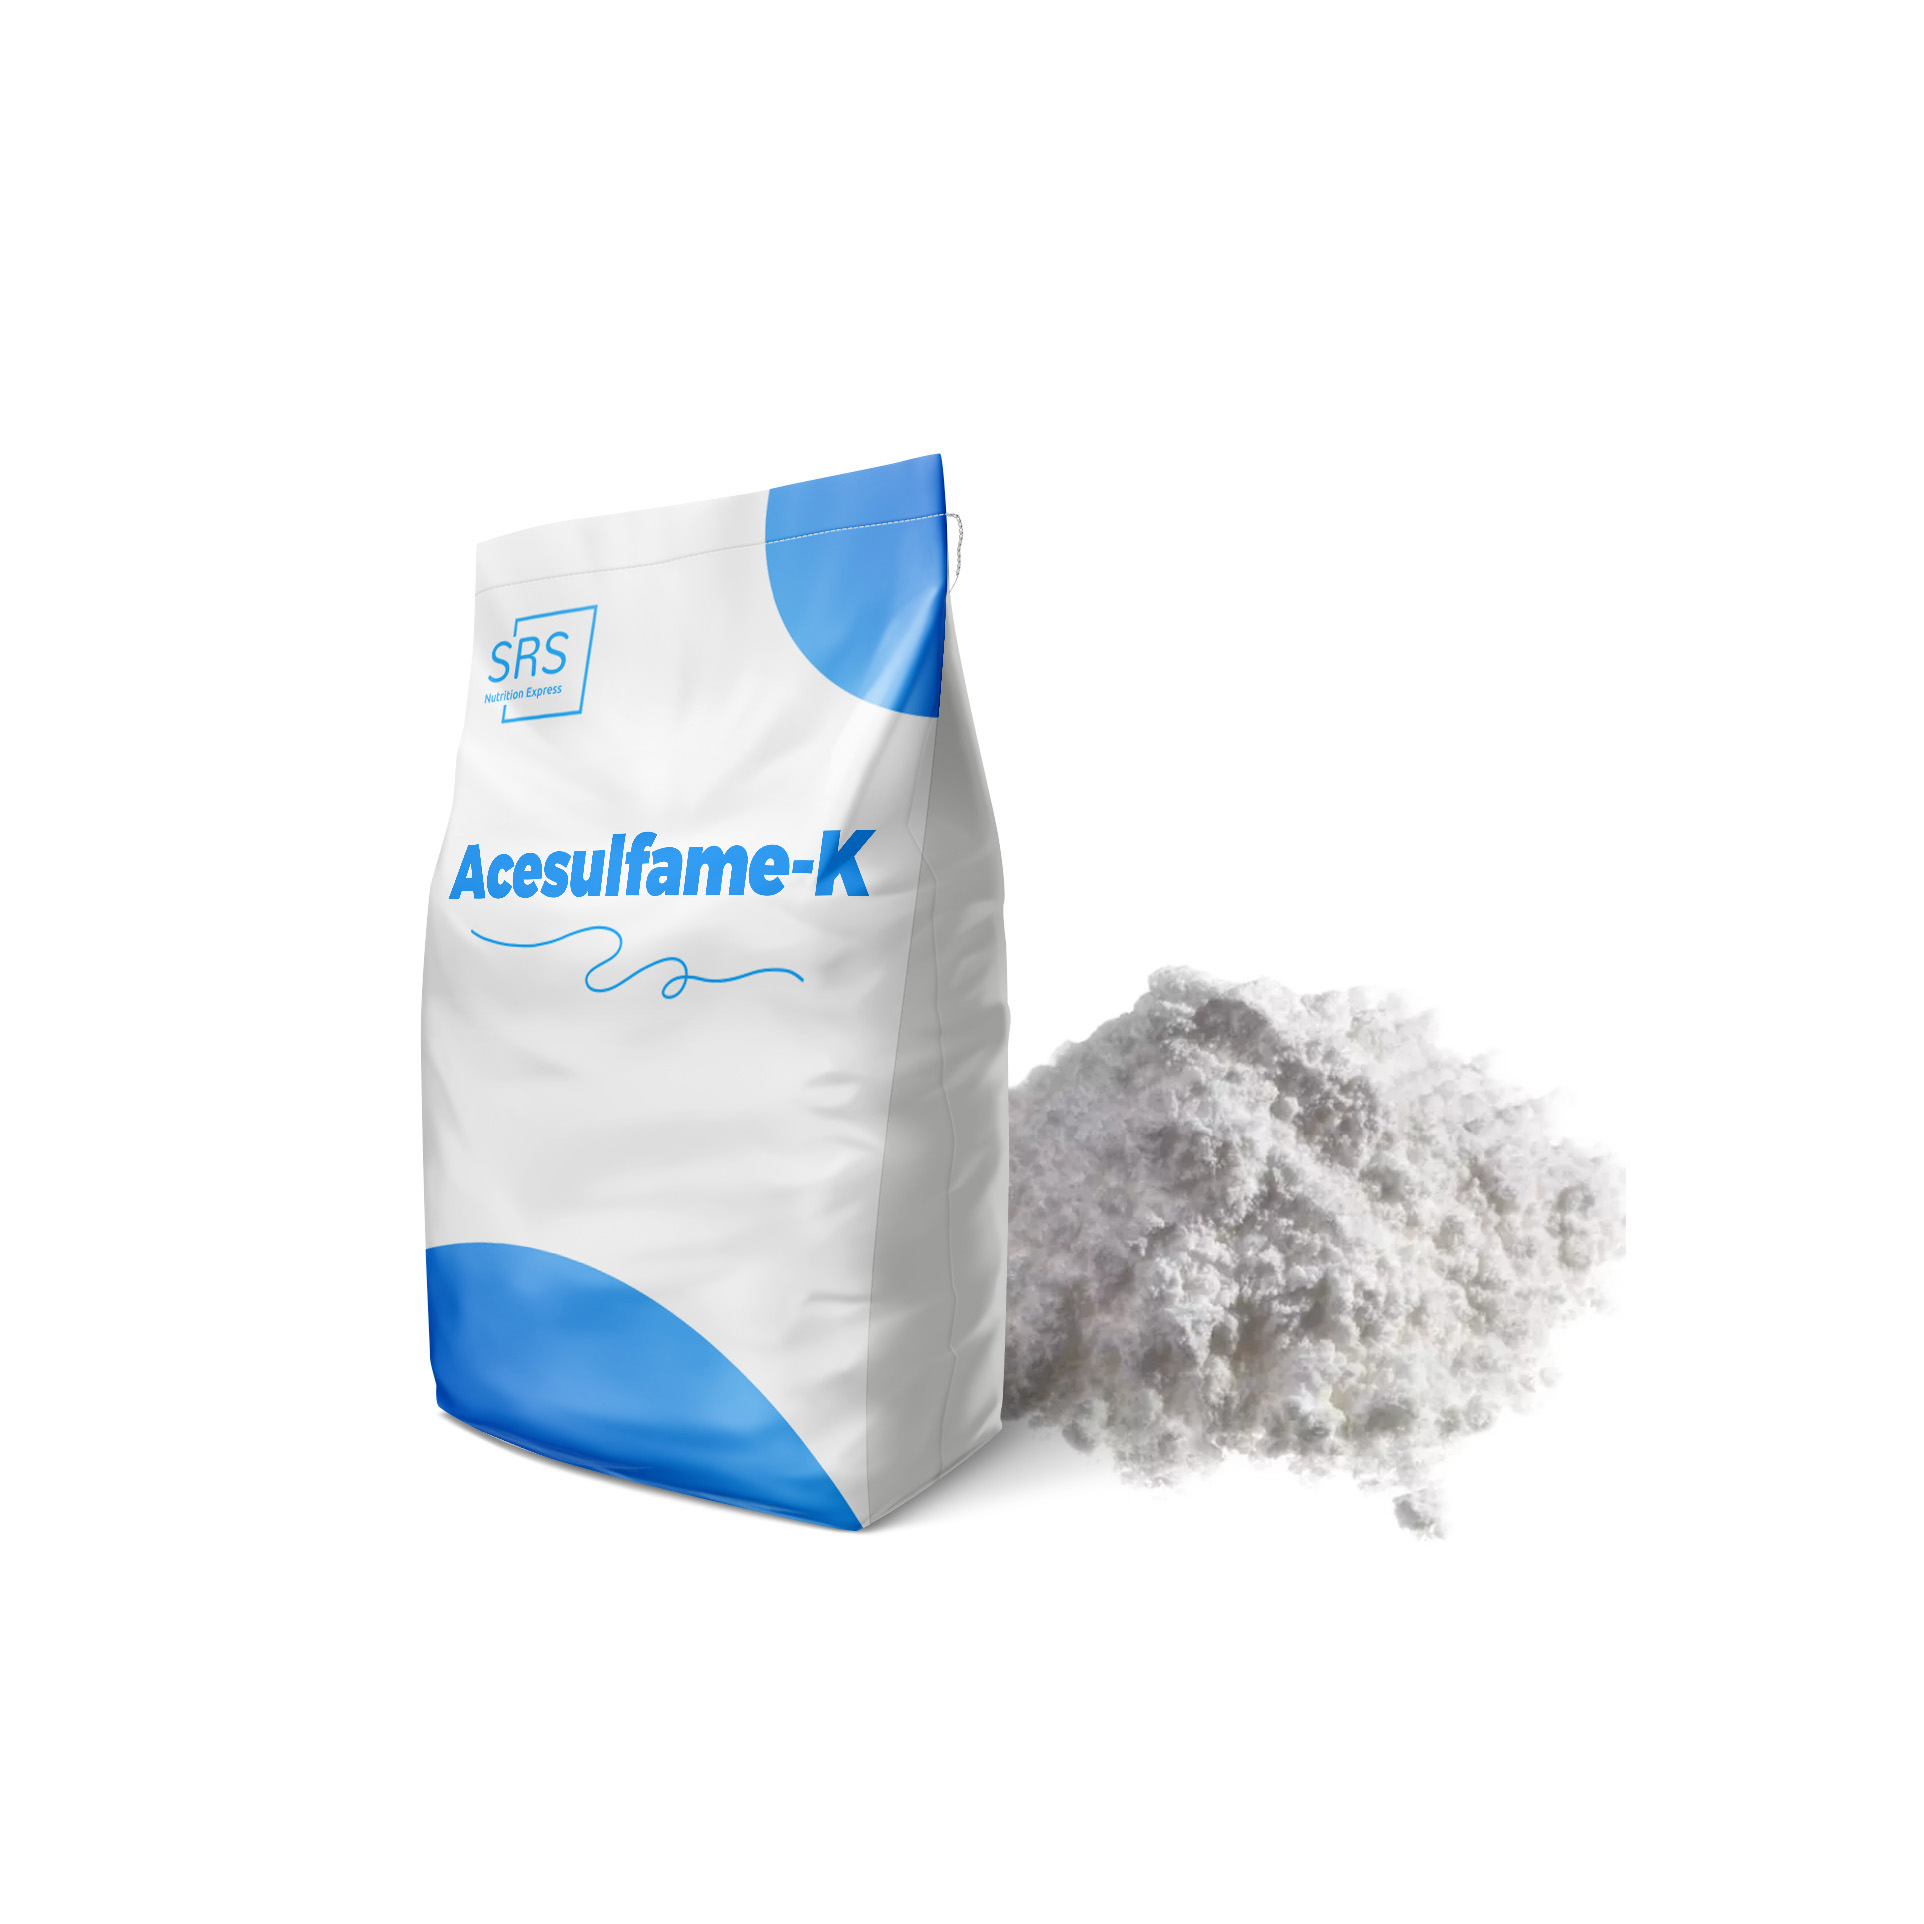 Multi-purpose Acesulfame-K for Sugar Free Advocates